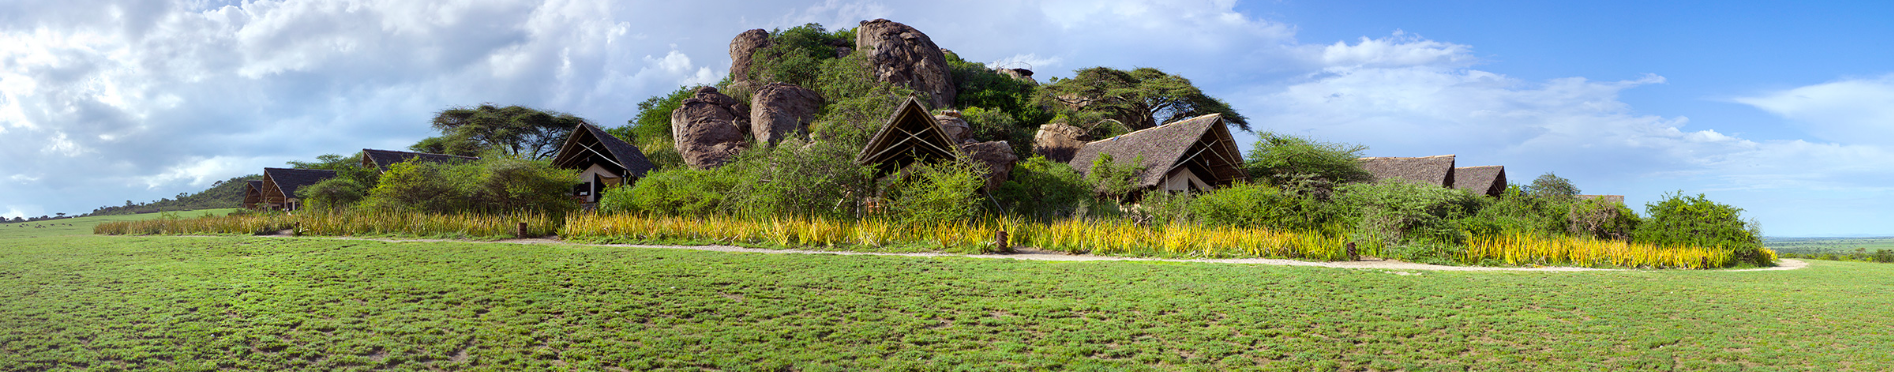 Archer & Gaher Adventures - Tanzania Group Tour Landscape